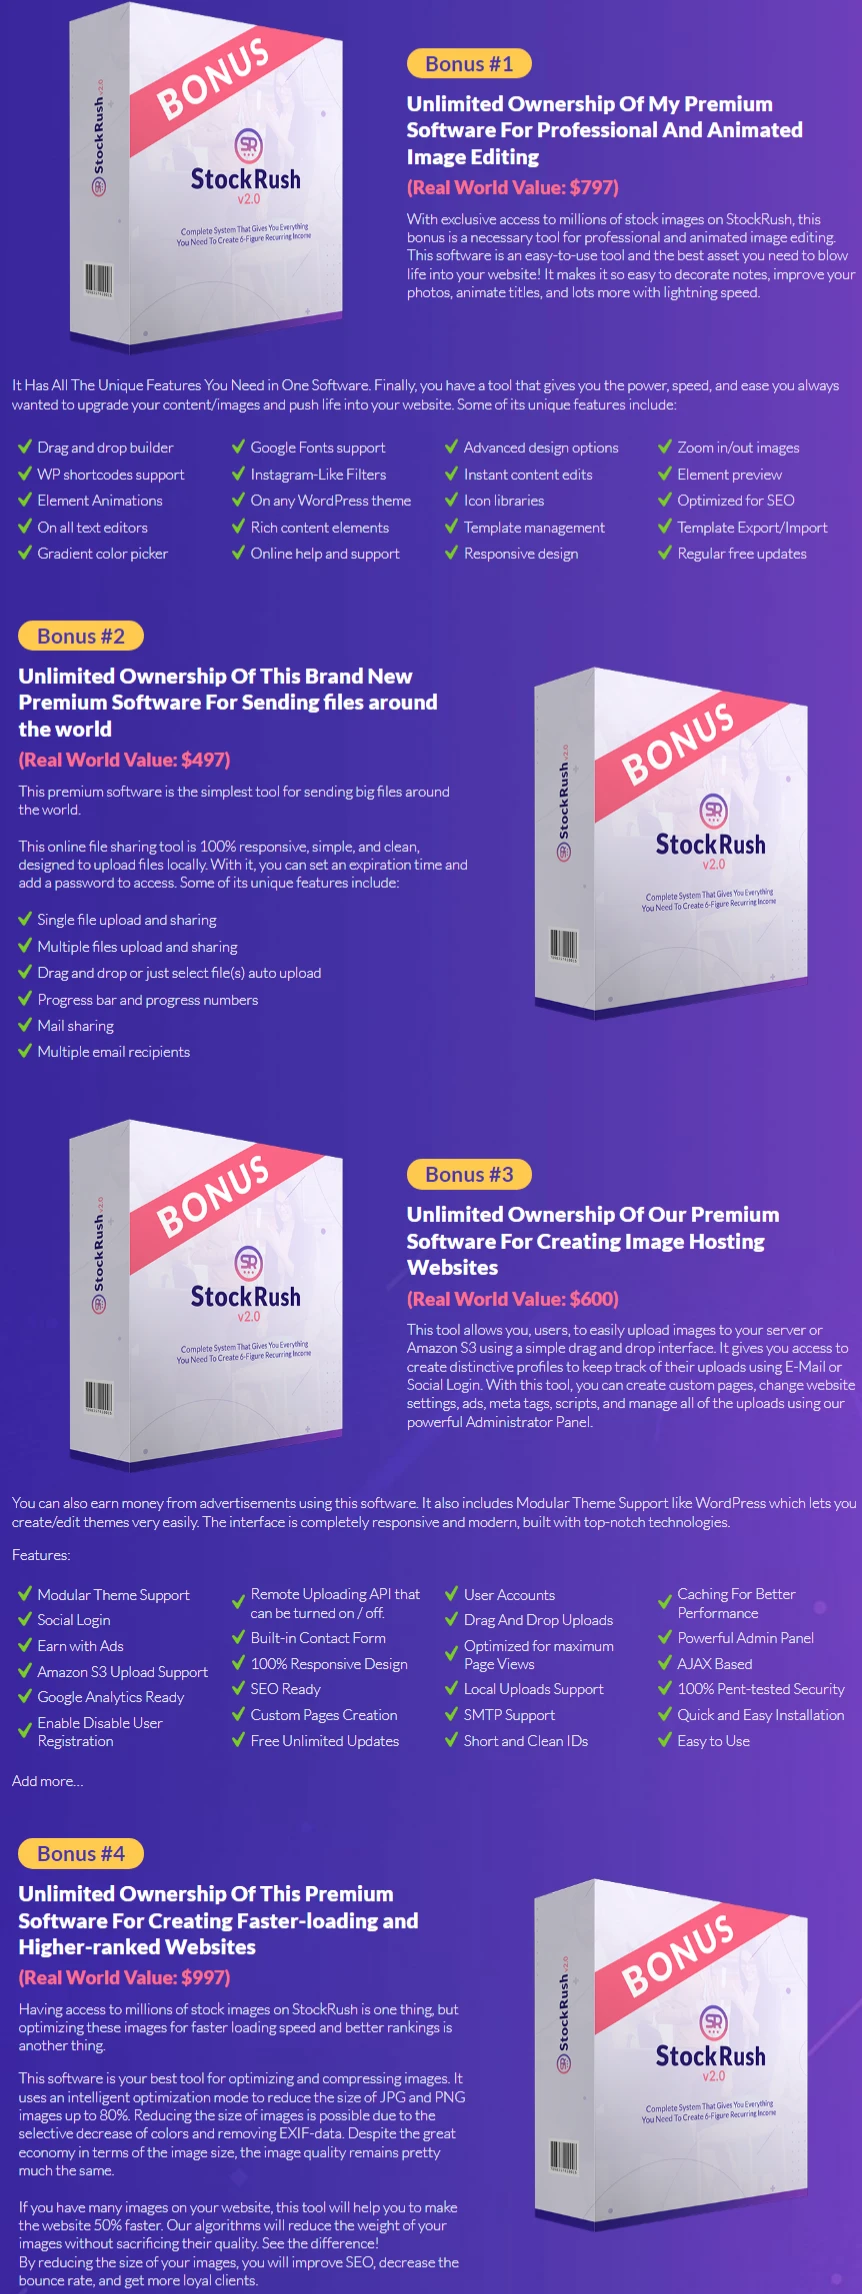 StockRush 2.0 bonus